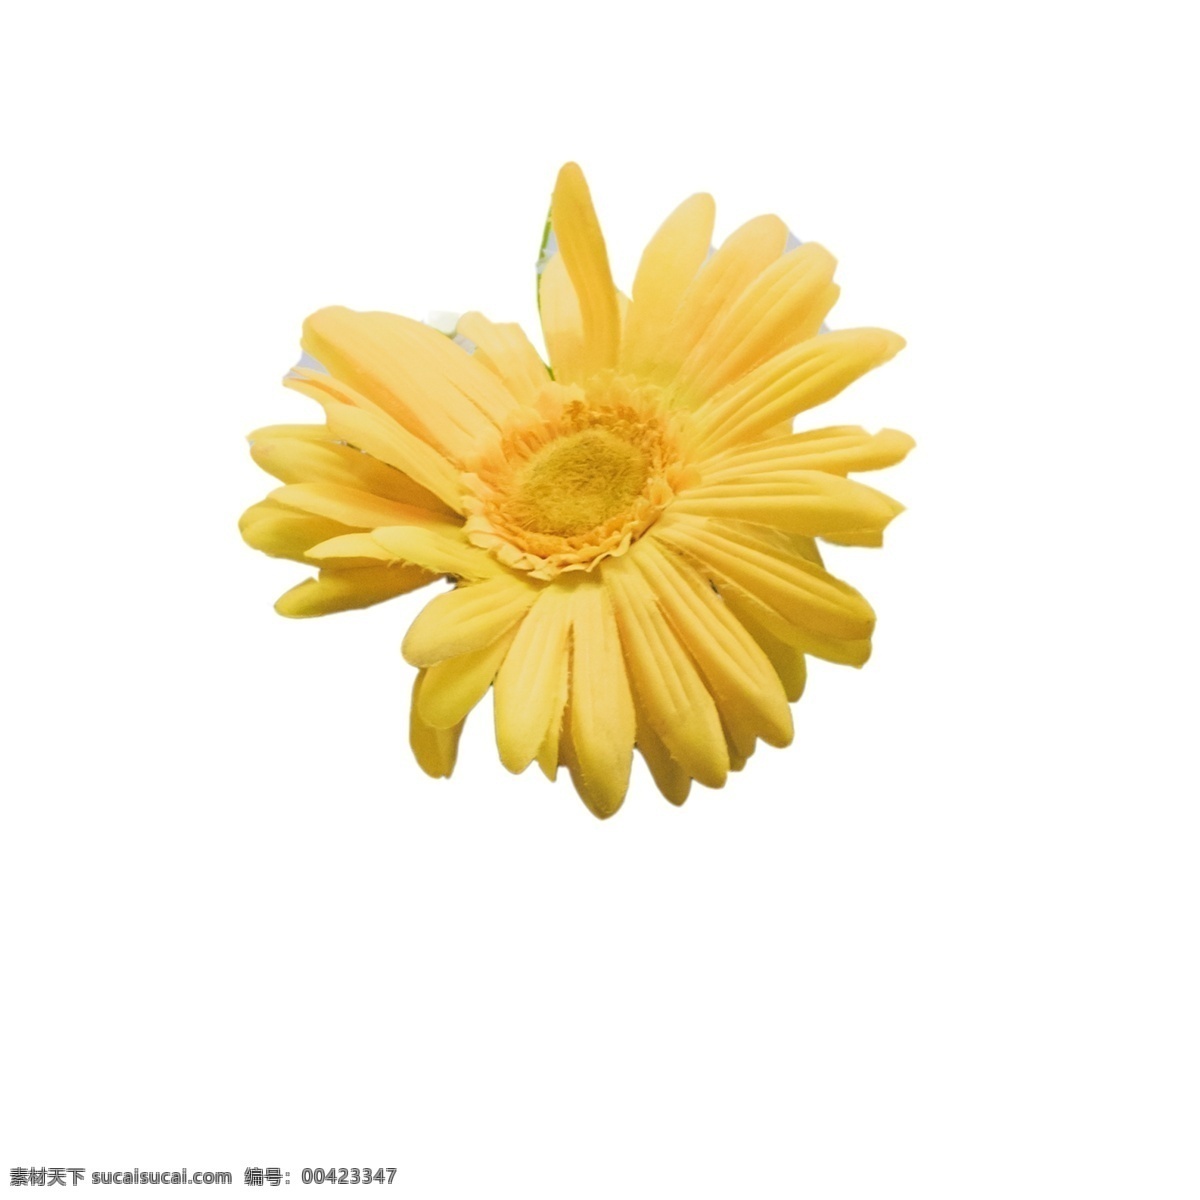 美丽 黄色 花朵 黄色鲜花 粉色花朵 春天鲜花 鲜花装饰 鲜花 实物 卡通 插图 创意卡通下载 png图下载